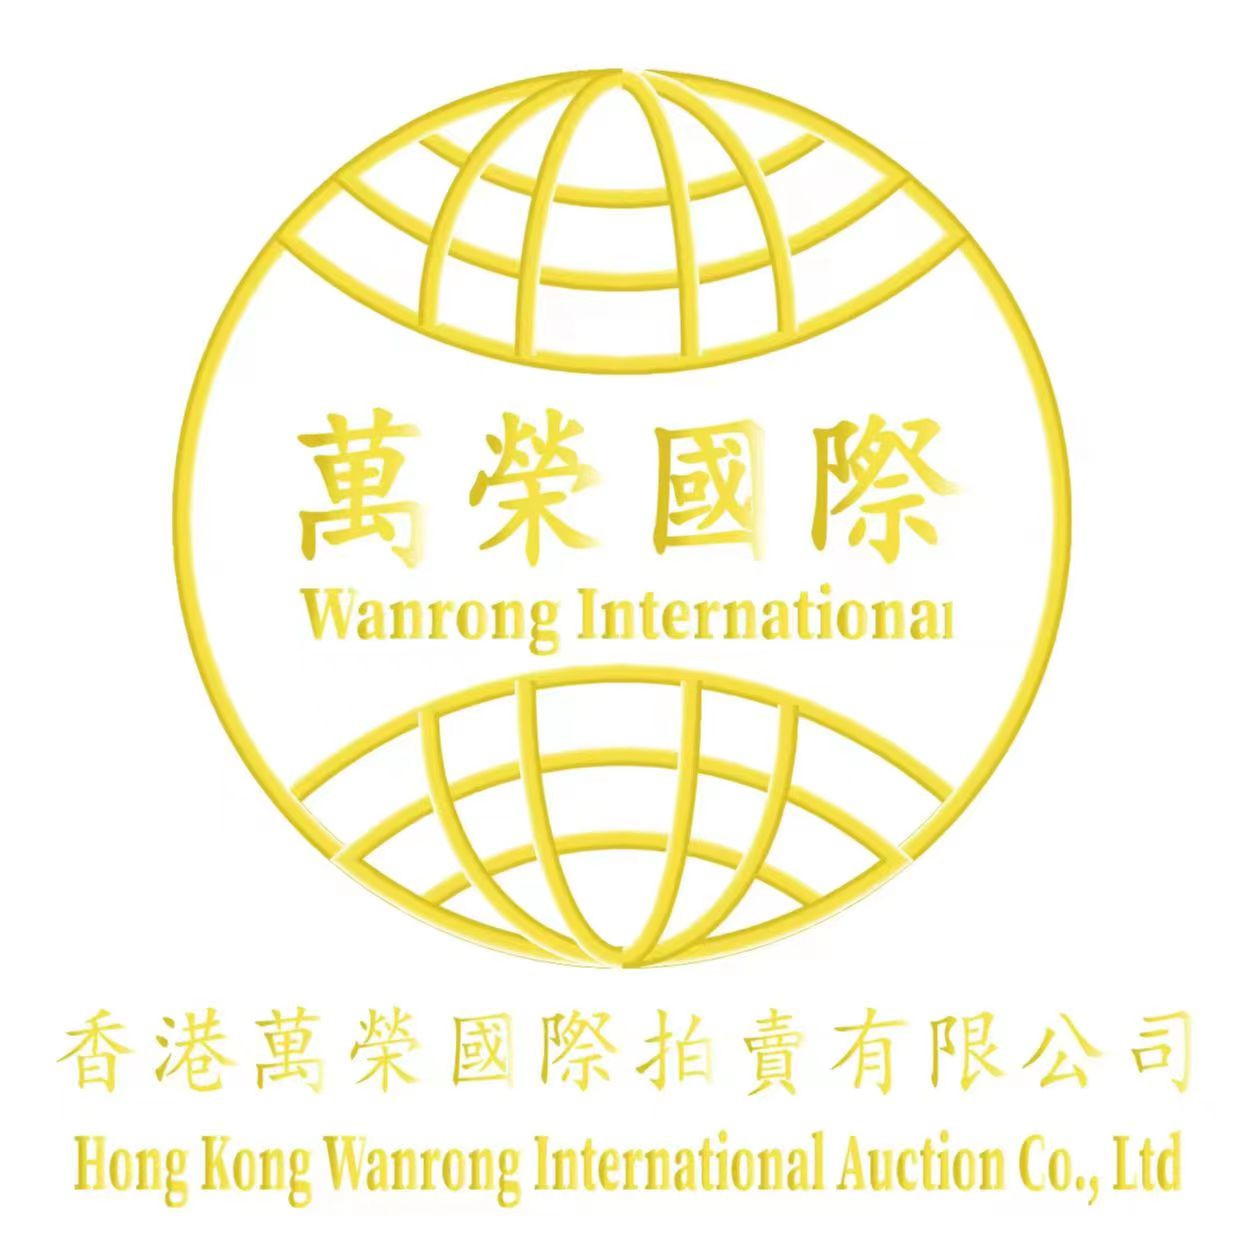 香港萬榮國際拍賣有限公司